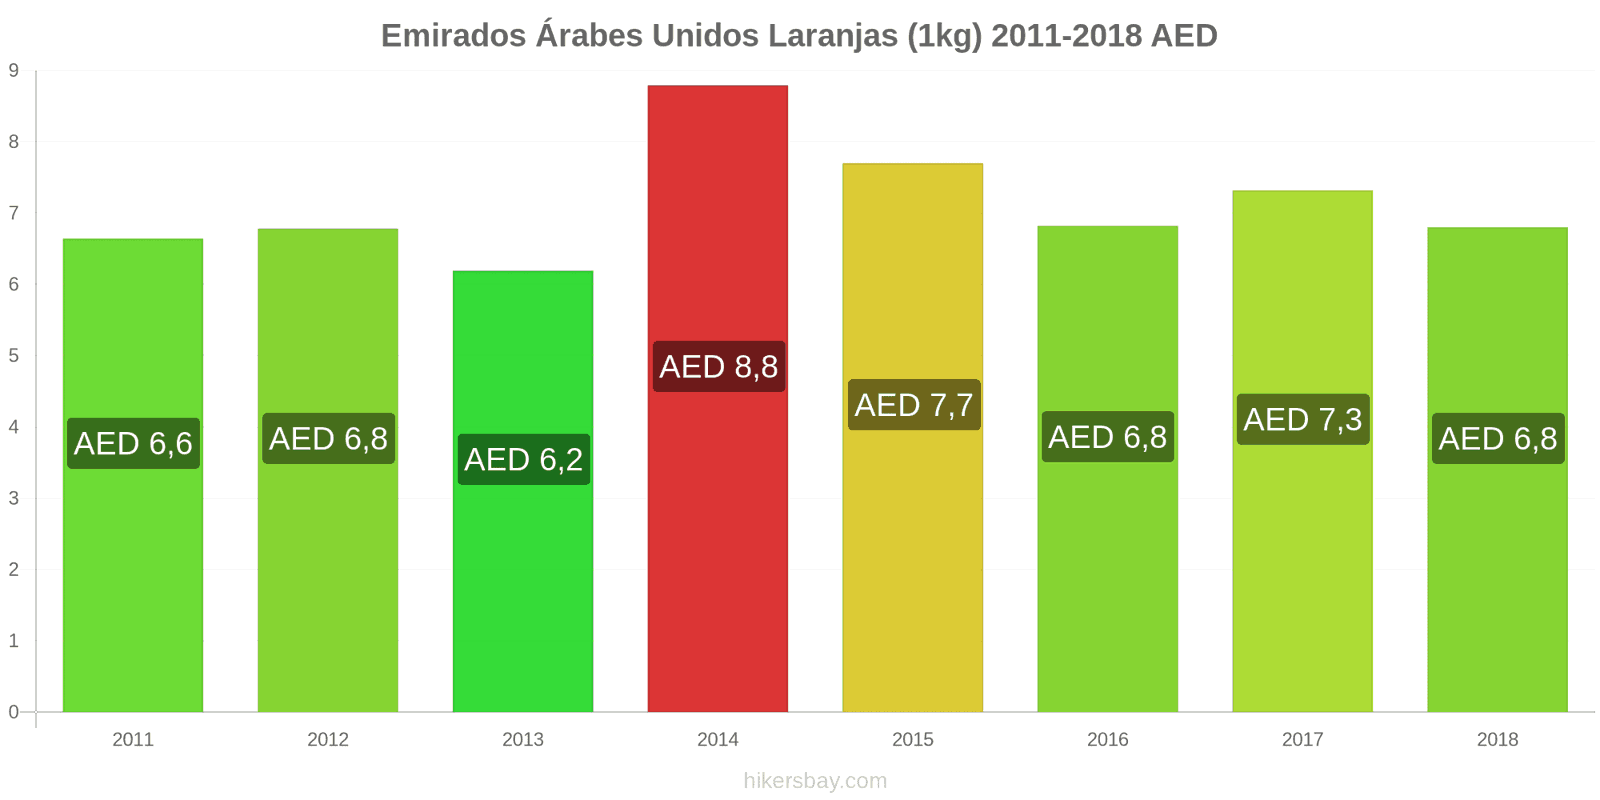 Emirados Árabes Unidos mudanças de preços Laranjas (1kg) hikersbay.com